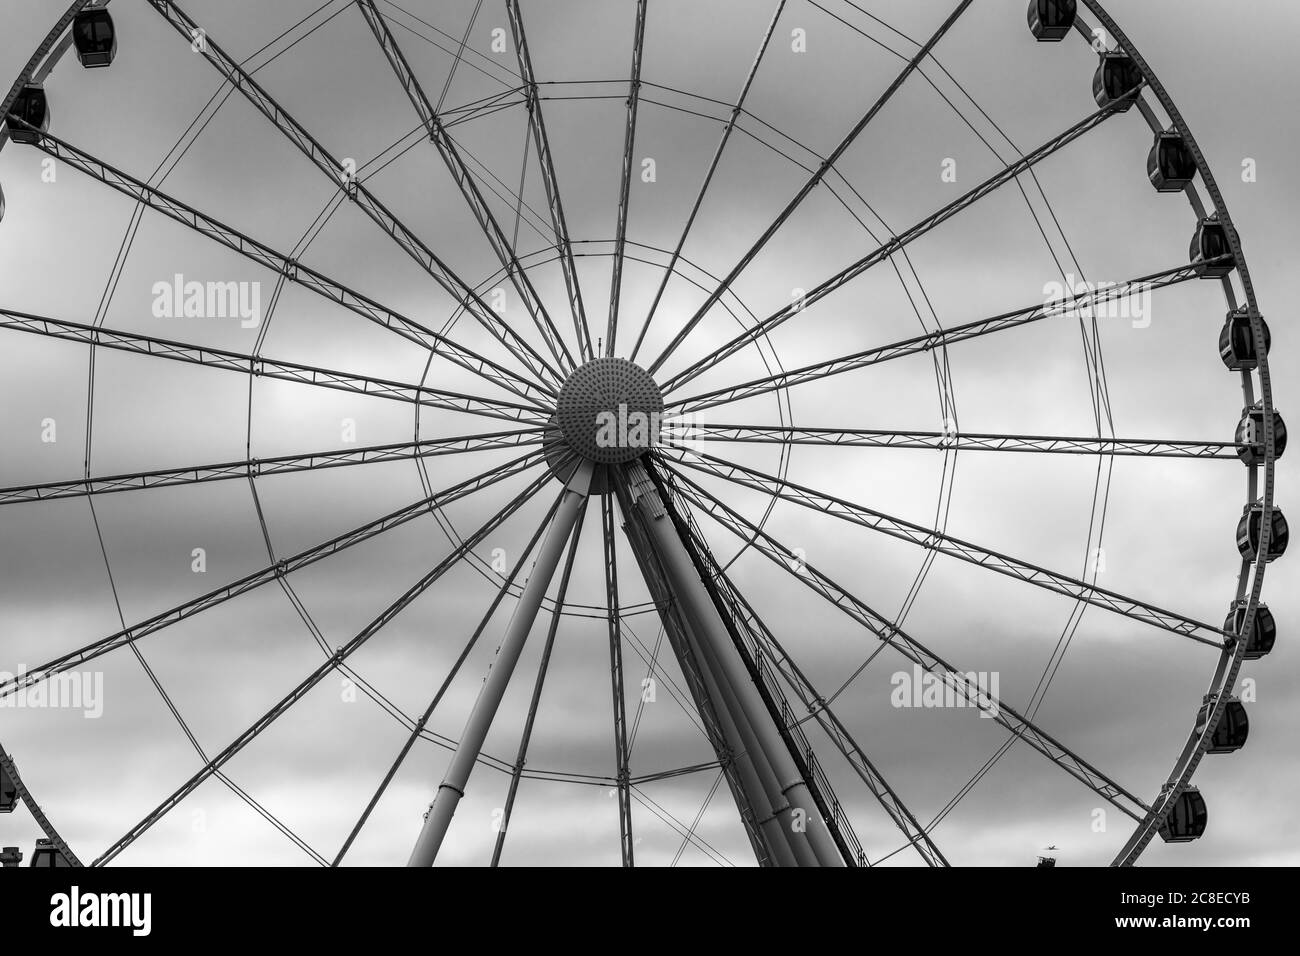 Large Ferris Wheel in Seattle Stock Photo